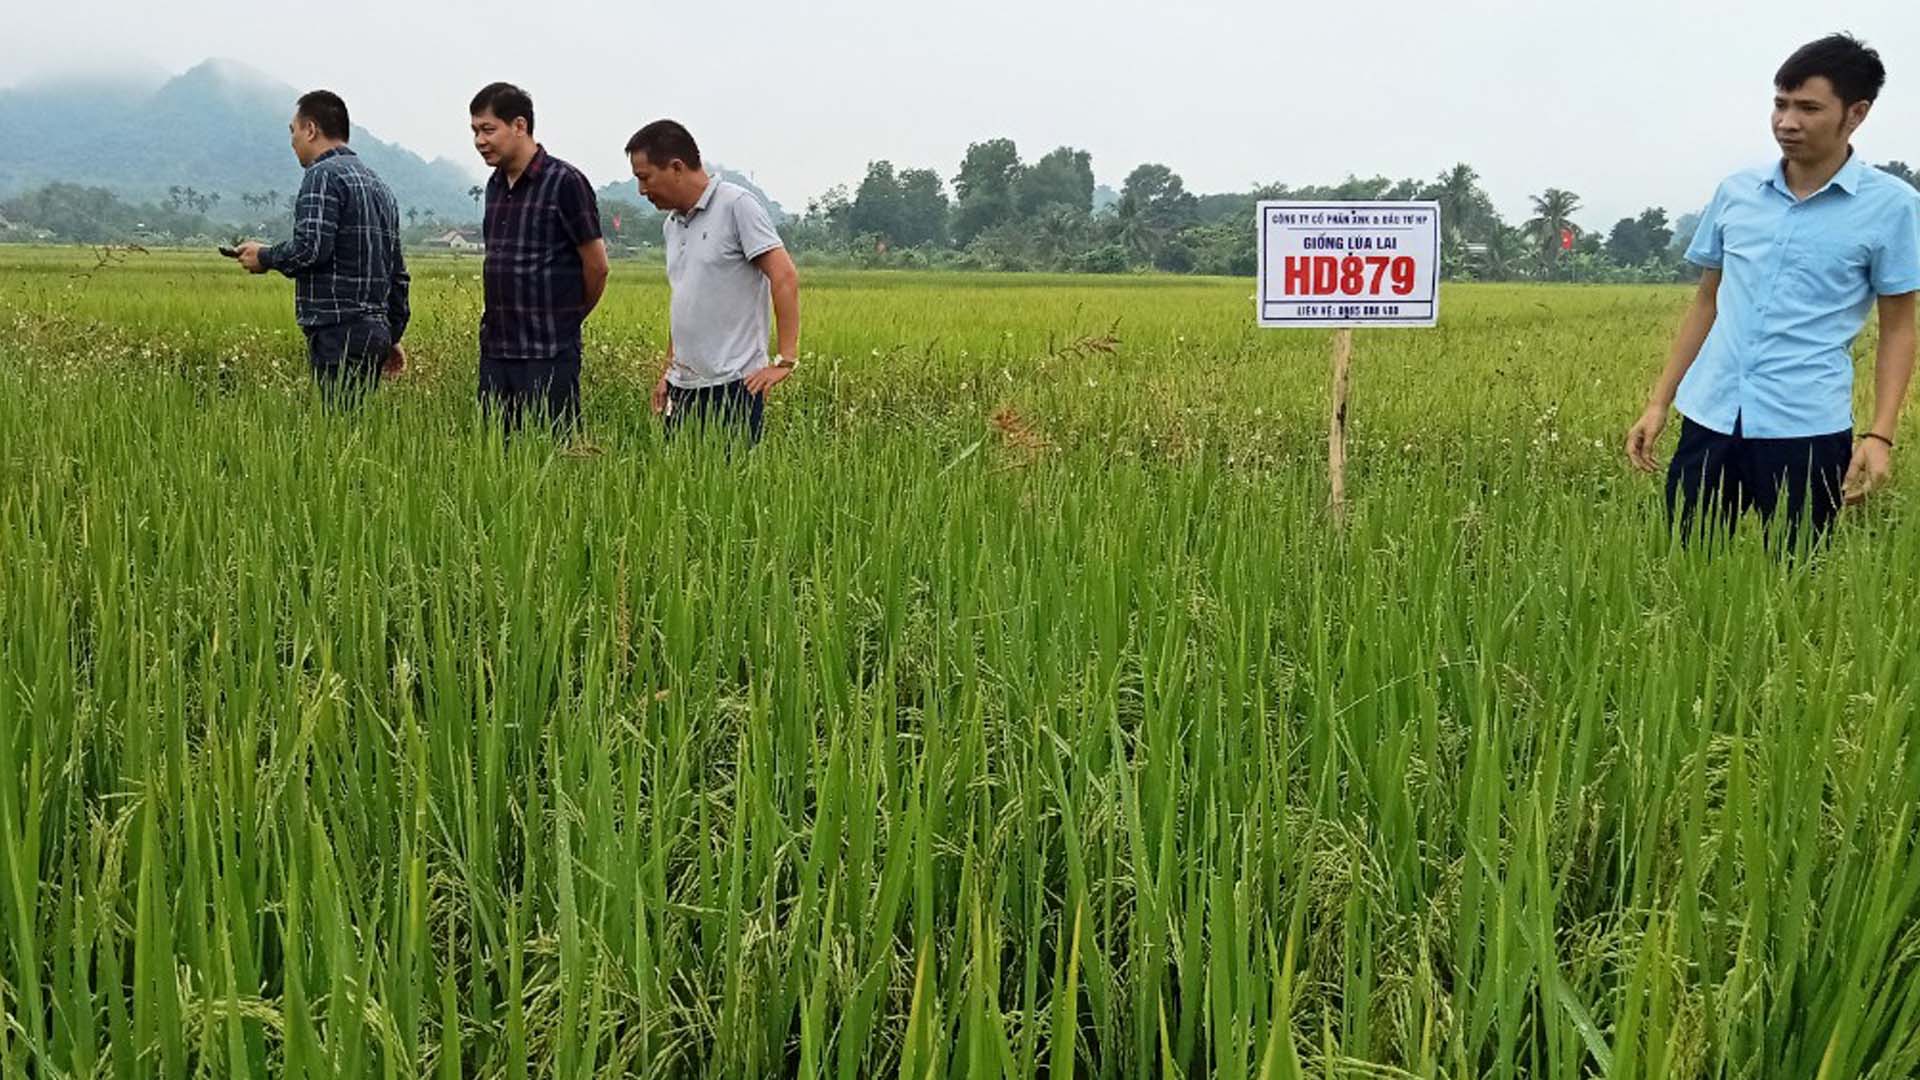 Nghệ An: Cục trồng trọt đánh giá giống lúa lai HD879 trồng vụ hè thu tại Quỳ Hợp